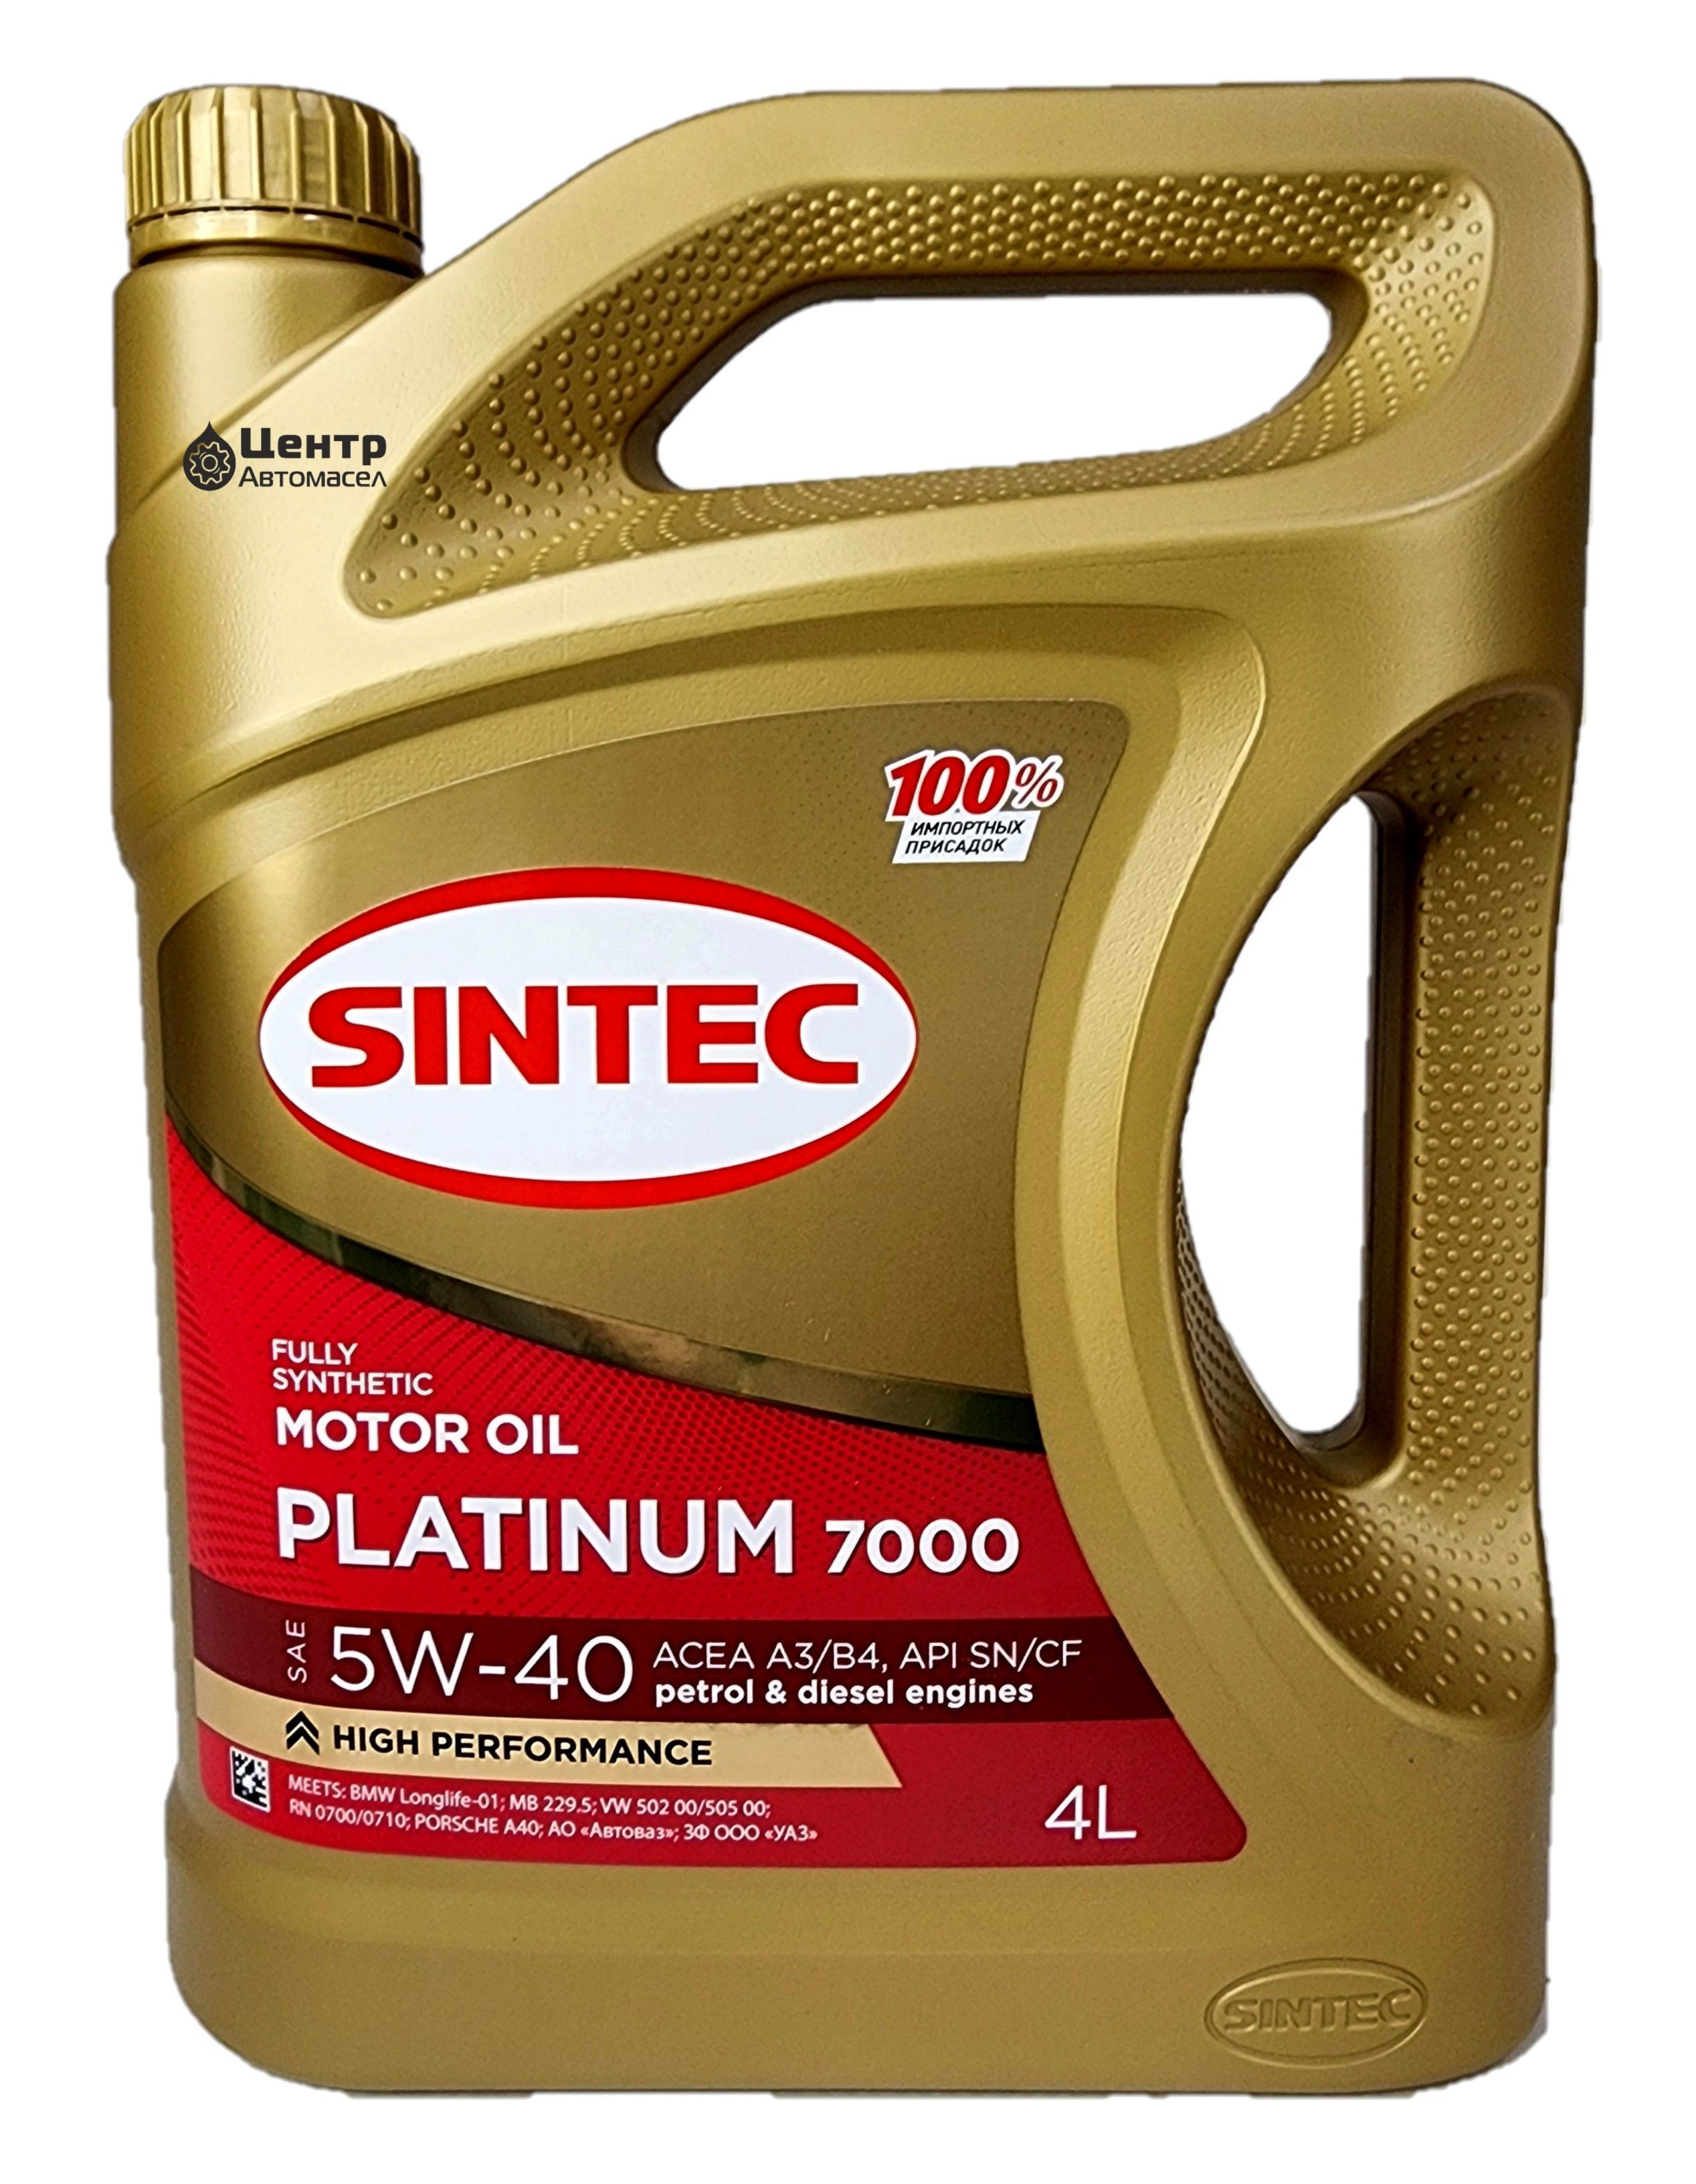 Синтек платинум 7000 отзывы. Моторное масло Sintec Platinum 7000 SAE 5w-30 API SL ACEA a5/b5 1 литр.